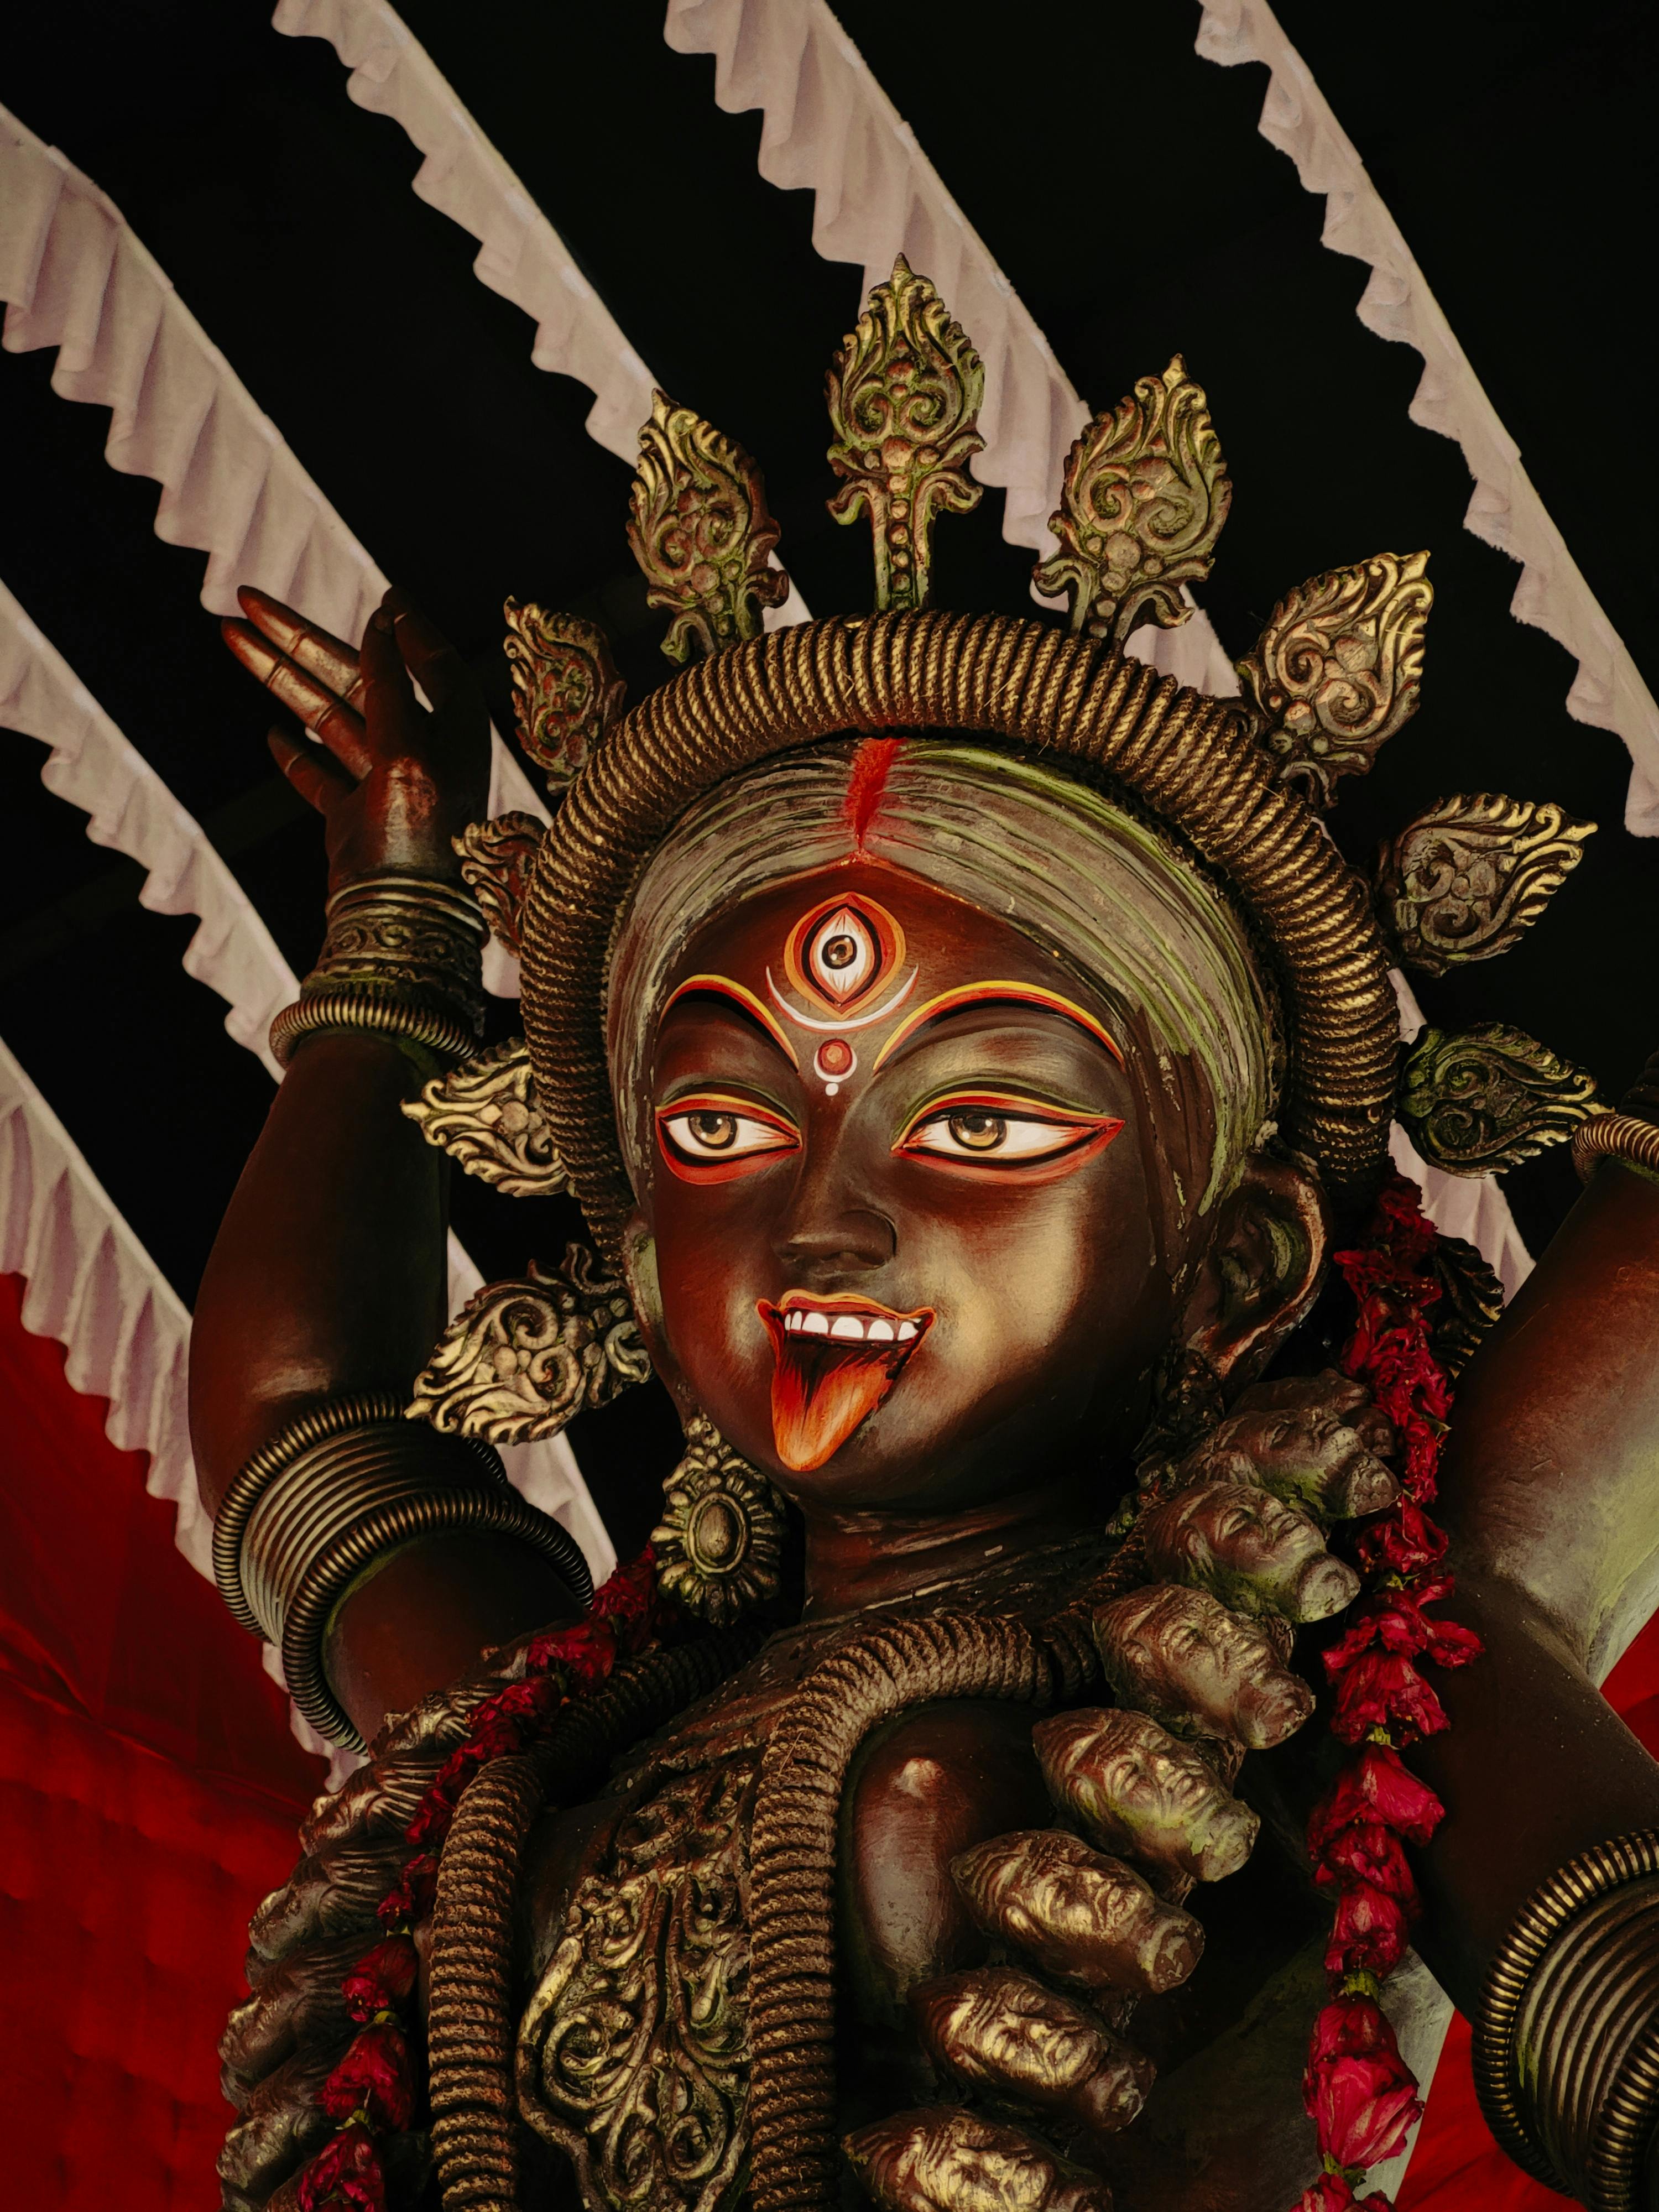 Jay maa Kali | Jay maa kali, Maa kali images, Kali goddess